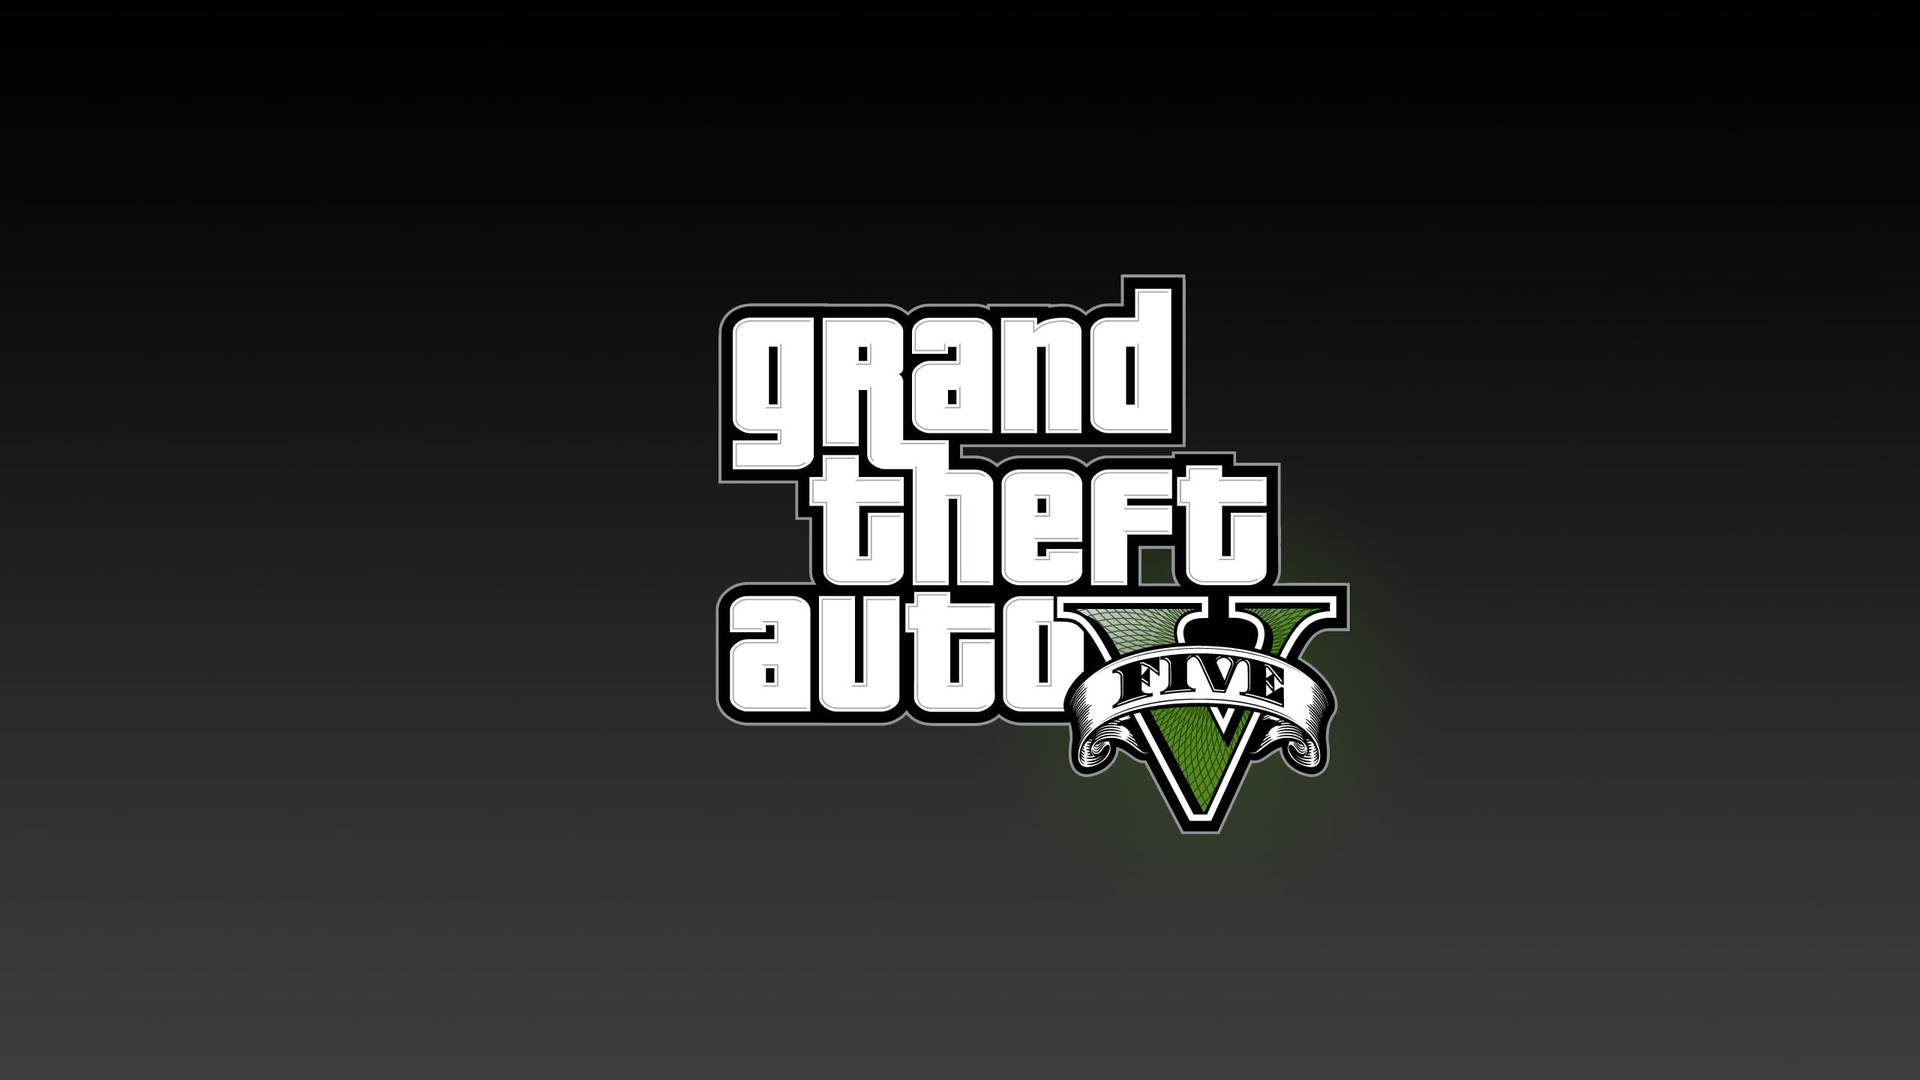 Immagini Di Grand Theft Auto